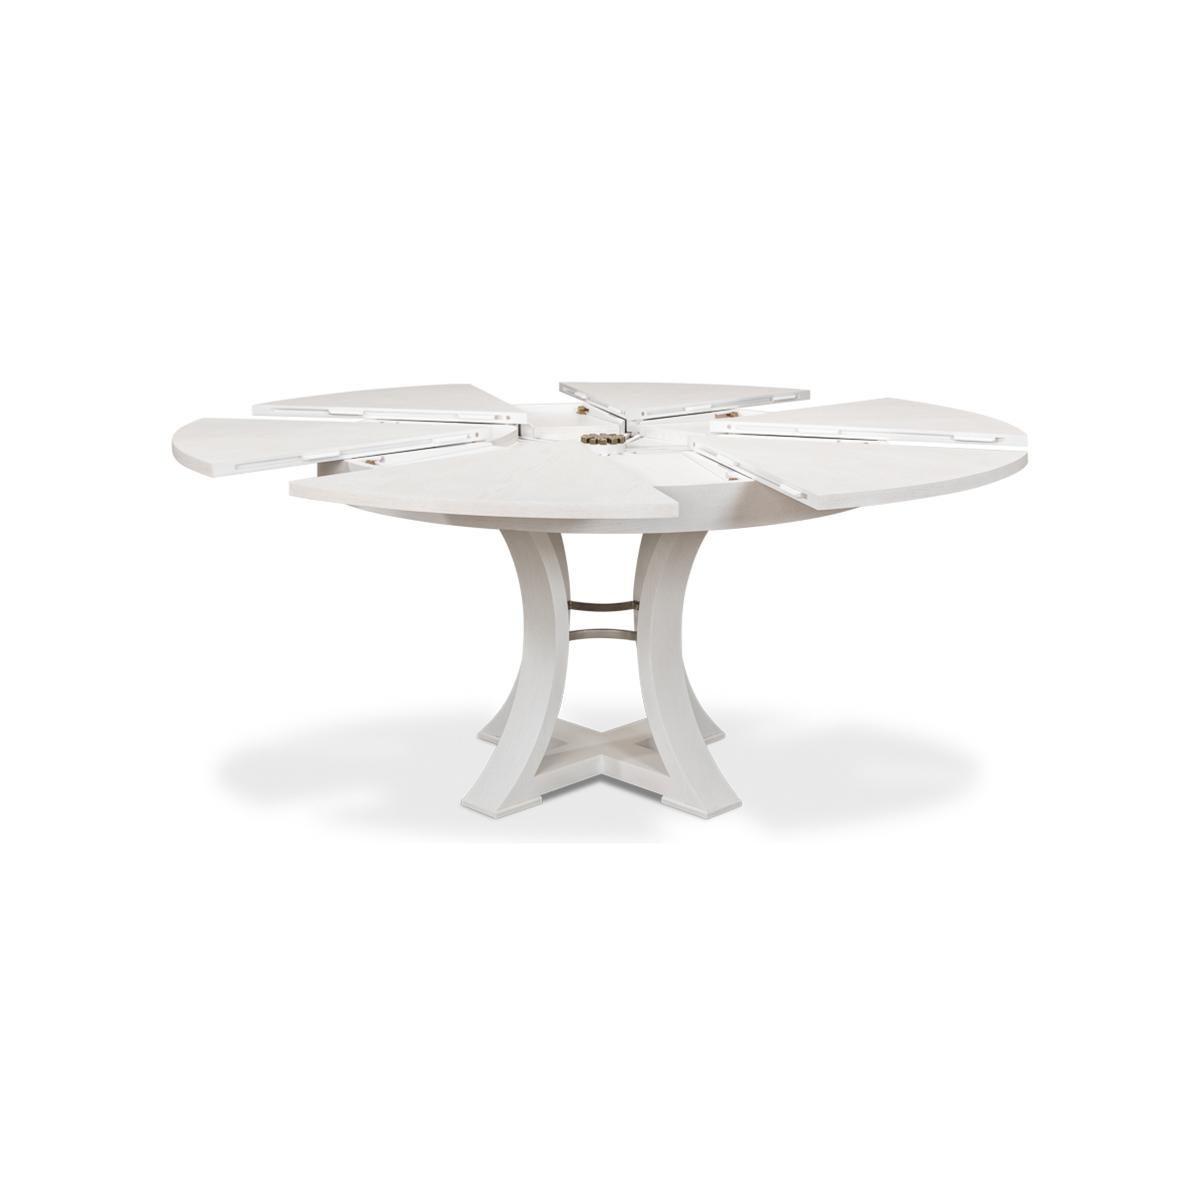 Une table de salle à manger moderne, ronde et extensible. Plateau en chêne dans notre finition blanc de travail avec une base de forme géométrique simple. La table s'ouvre et s'allonge jusqu'à 70